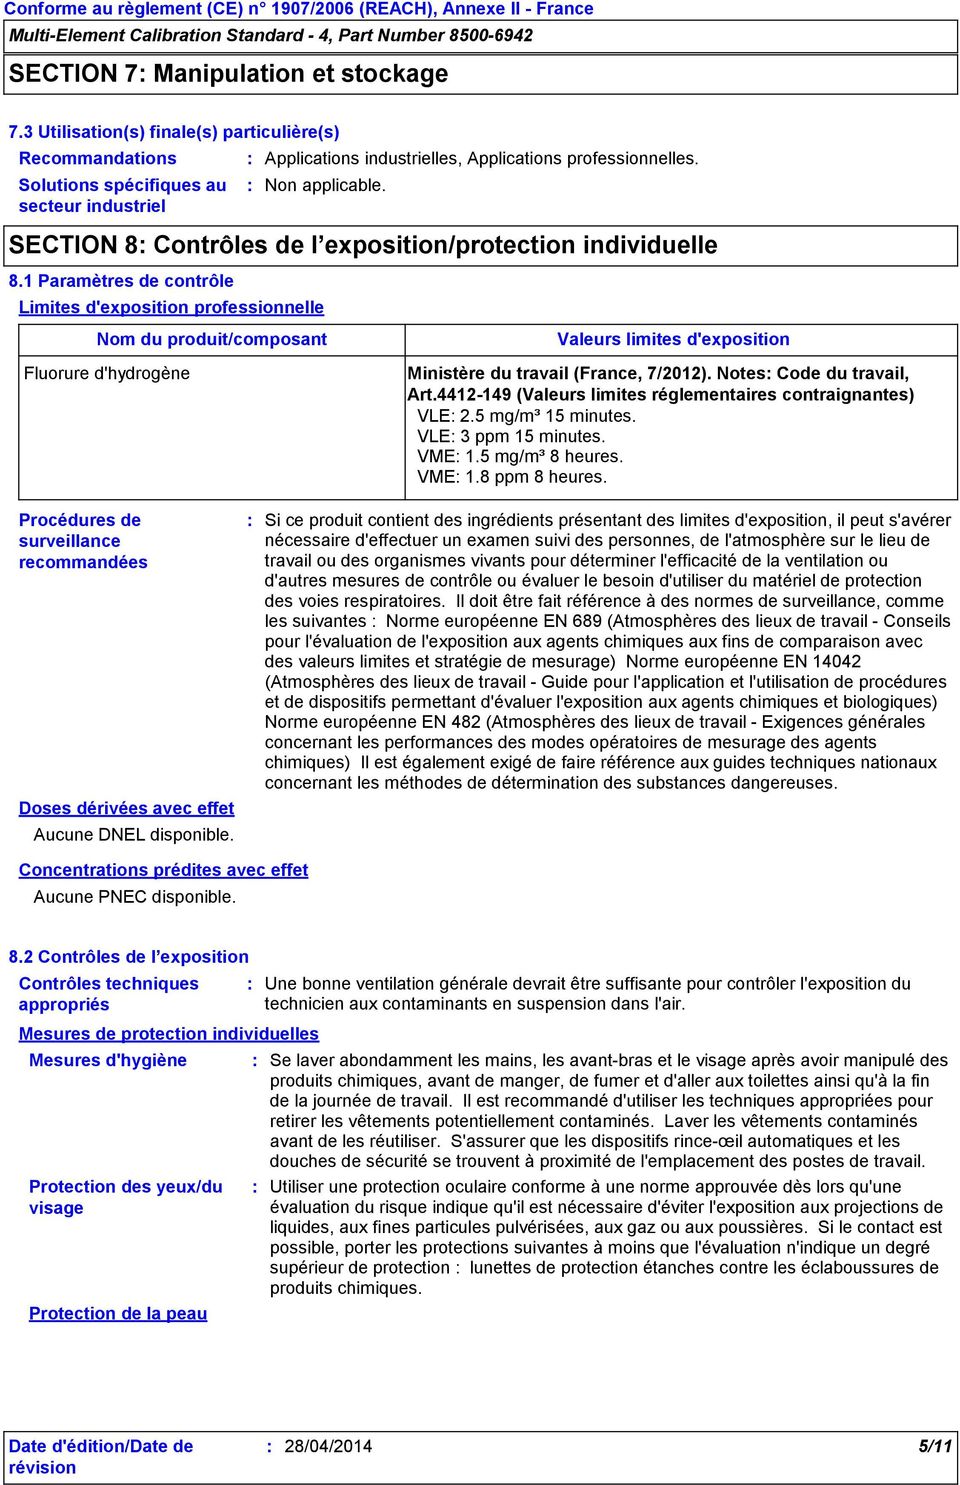 1 Paramètres de contrôle Limites d'exposition professionnelle Nom du produit/composant Fluorure d'hydrogène Valeurs limites d'exposition Ministère du travail (France, 7/2012).